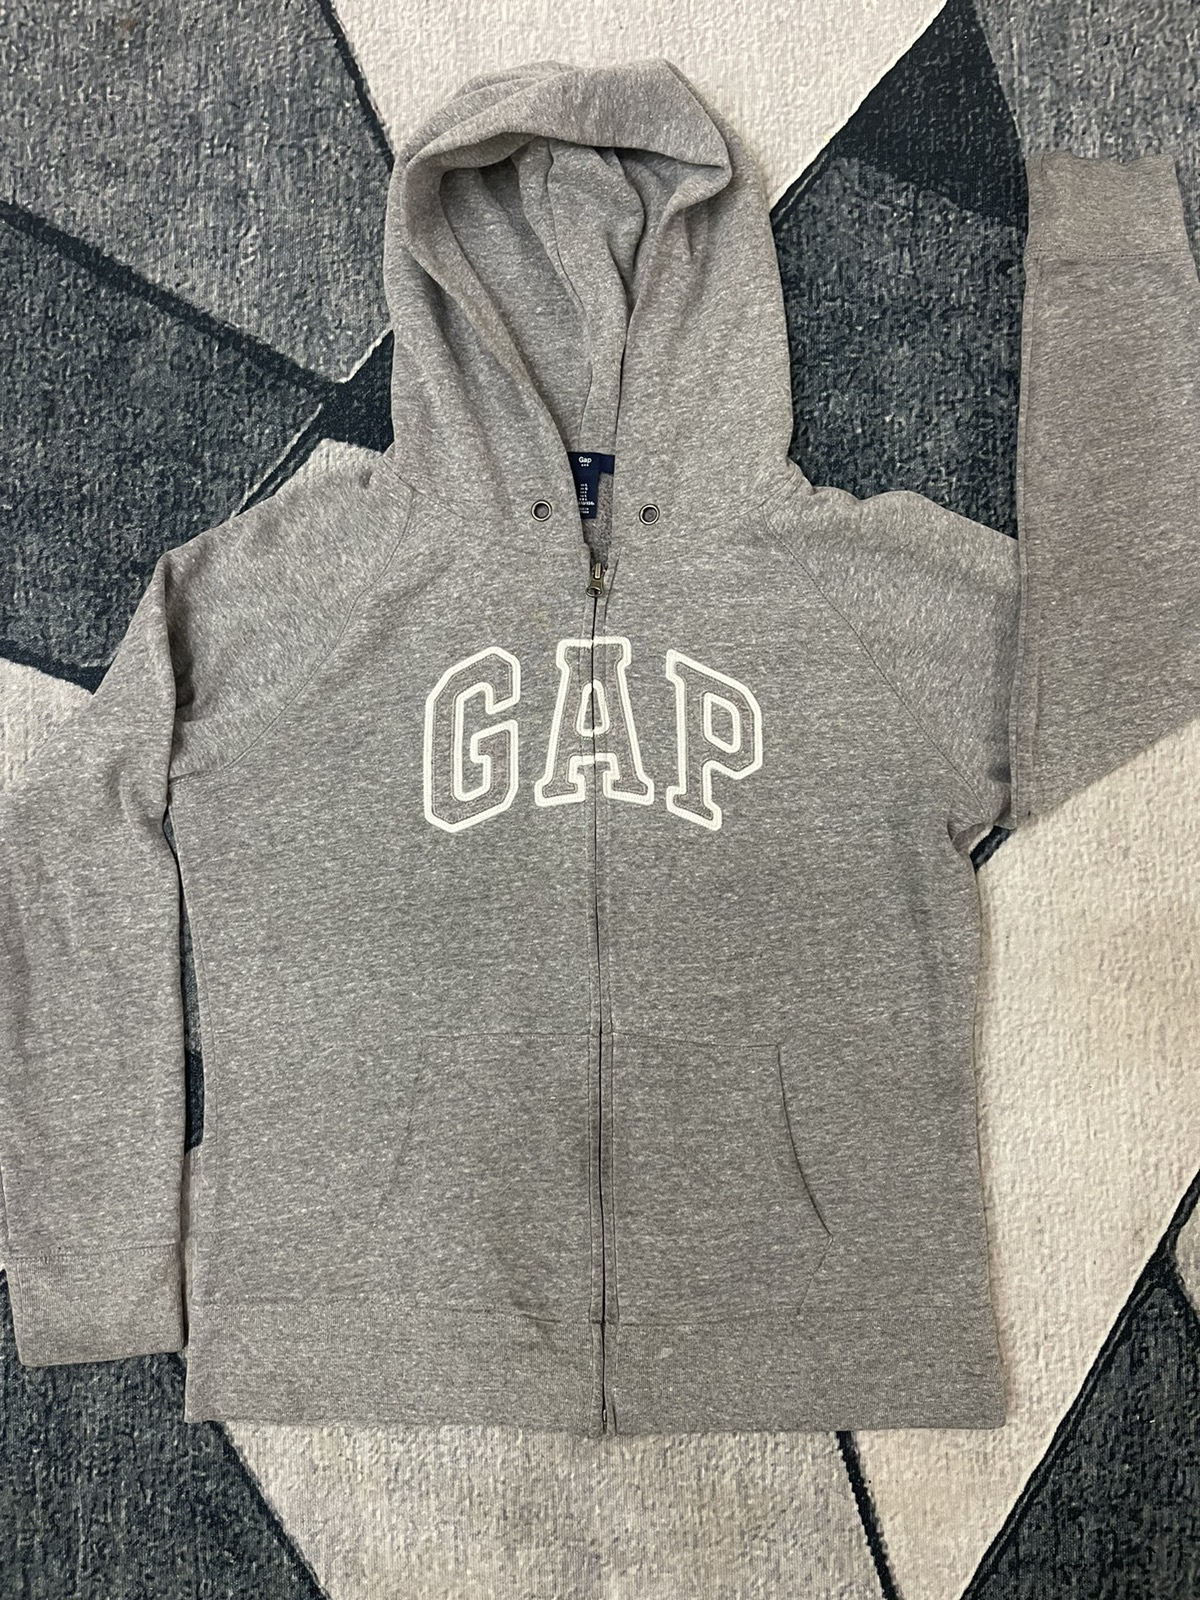 Gap - GAP zip up Hoodie Spell Out Streetwear / Vintage - 3